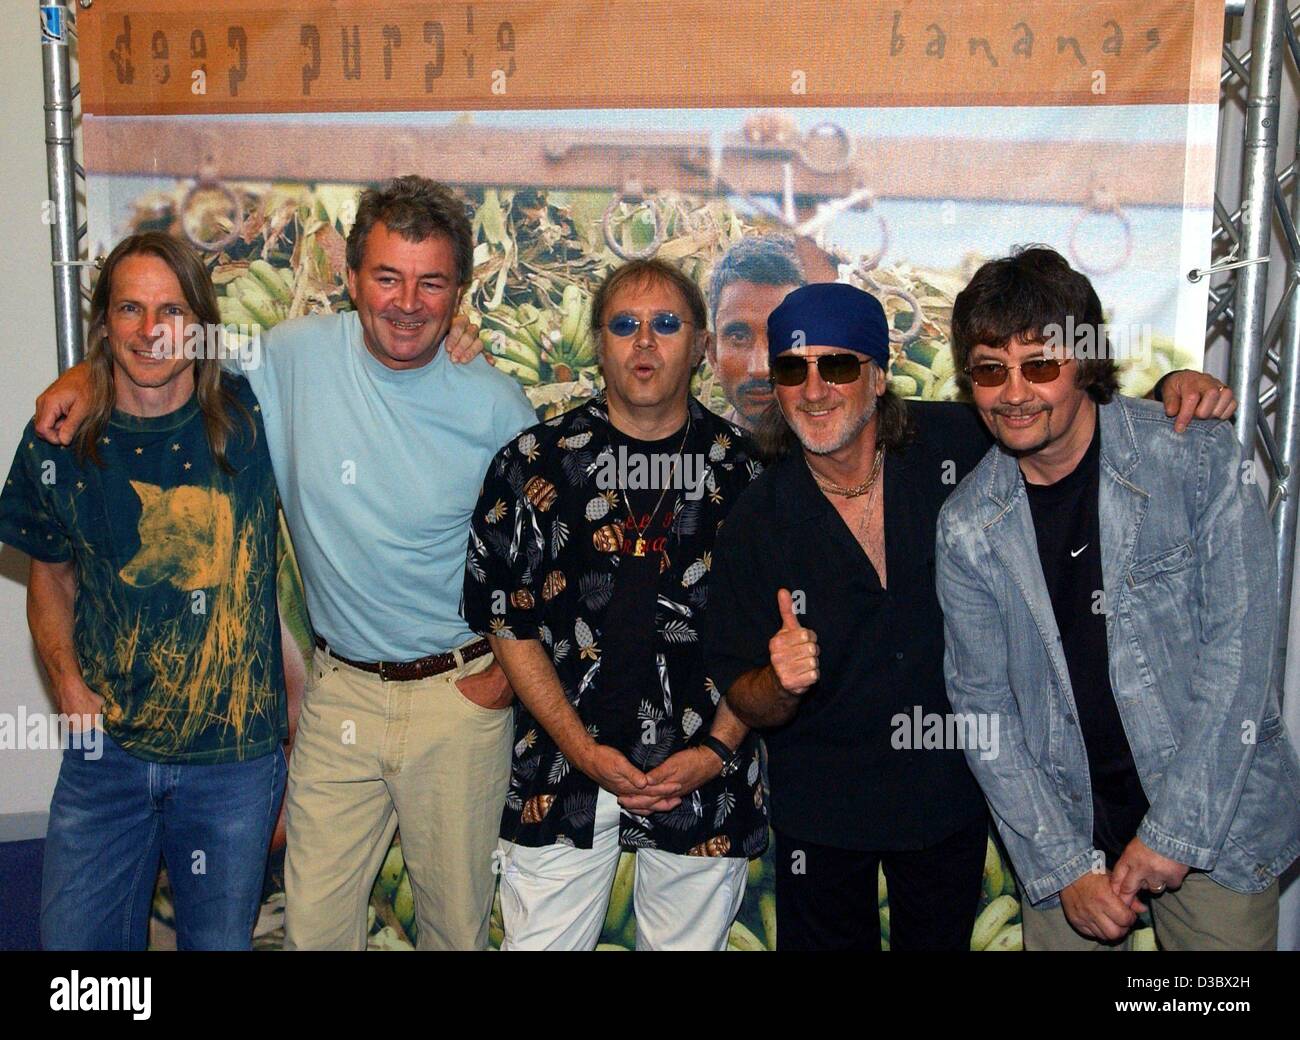 (Dpa) - Steve Morse, Ian Gillan, Ian Paice, Roger Glover und Don Airey (L-R), die Mitglieder der britischen Rockgruppe Deep Purple, Pose bei der Präsentation ihrer neuen CD mit dem Titel "Bananen" in Berlin, 20. August 2003. Vom 31. Oktober tourt sie durch elf deutsche Städte auf ihre Bananen-Tou Stockfoto